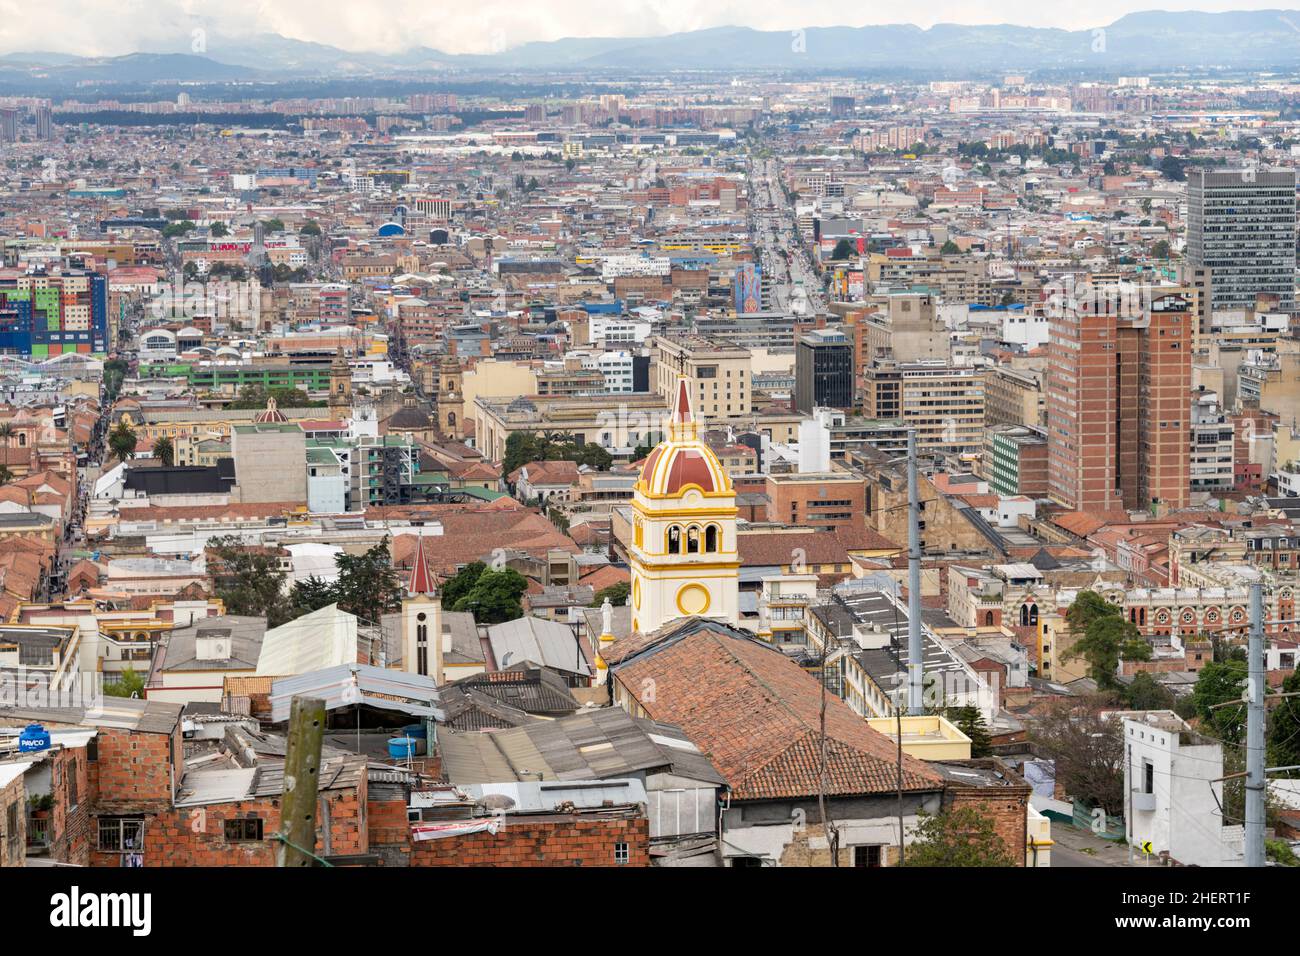 Paysage urbain de la Candelaria, centre de Bogota, capitale de la Colombie, Amérique du Sud. Banque D'Images